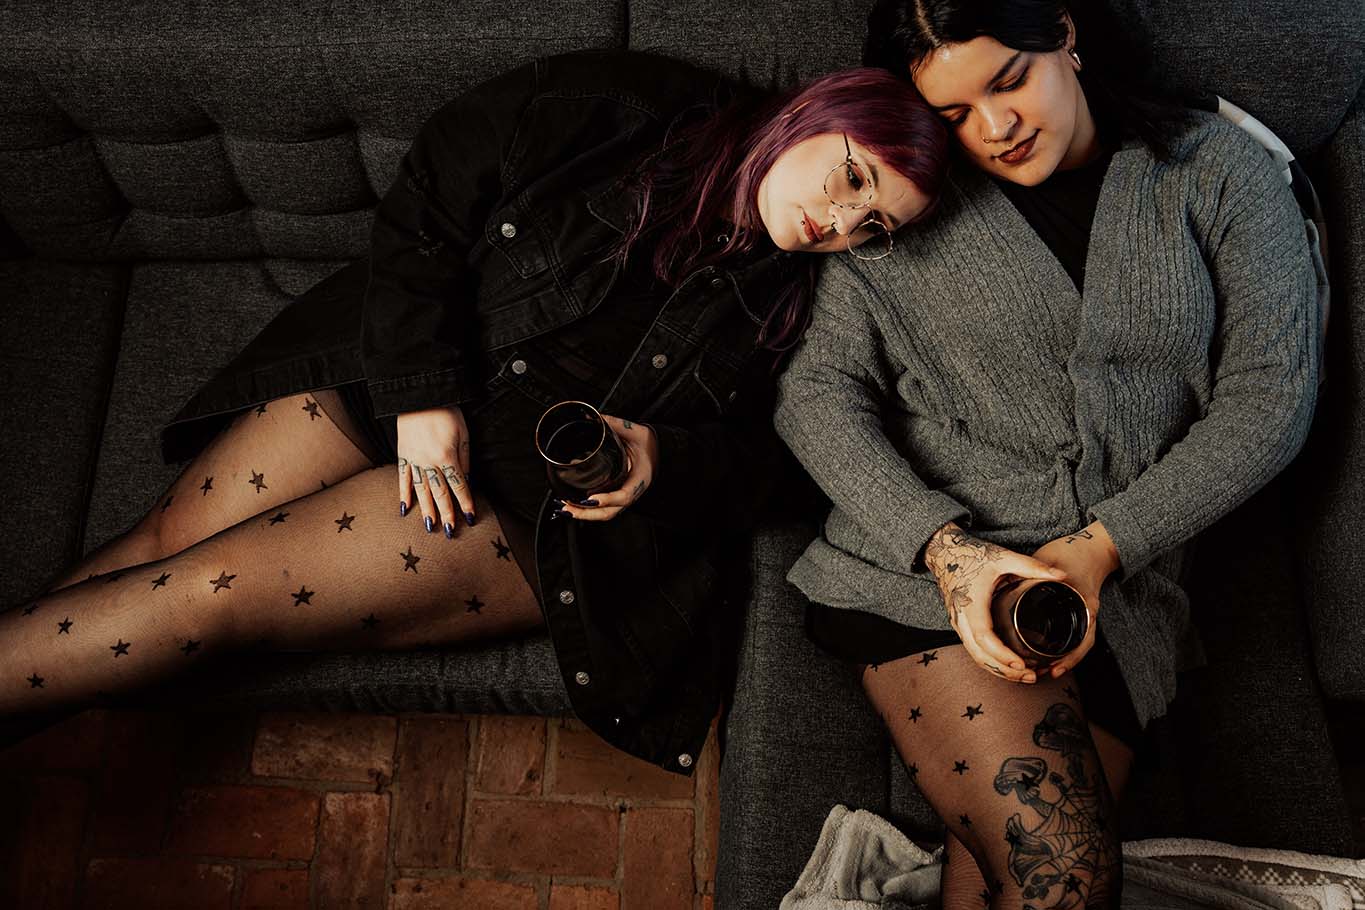 Feinstrumpfhose mit Sternchenmuster an den Beinen zweier Frauen, die aneinander angelehnt auf dem Sofa liegen und ein Glas in der Hand halten.